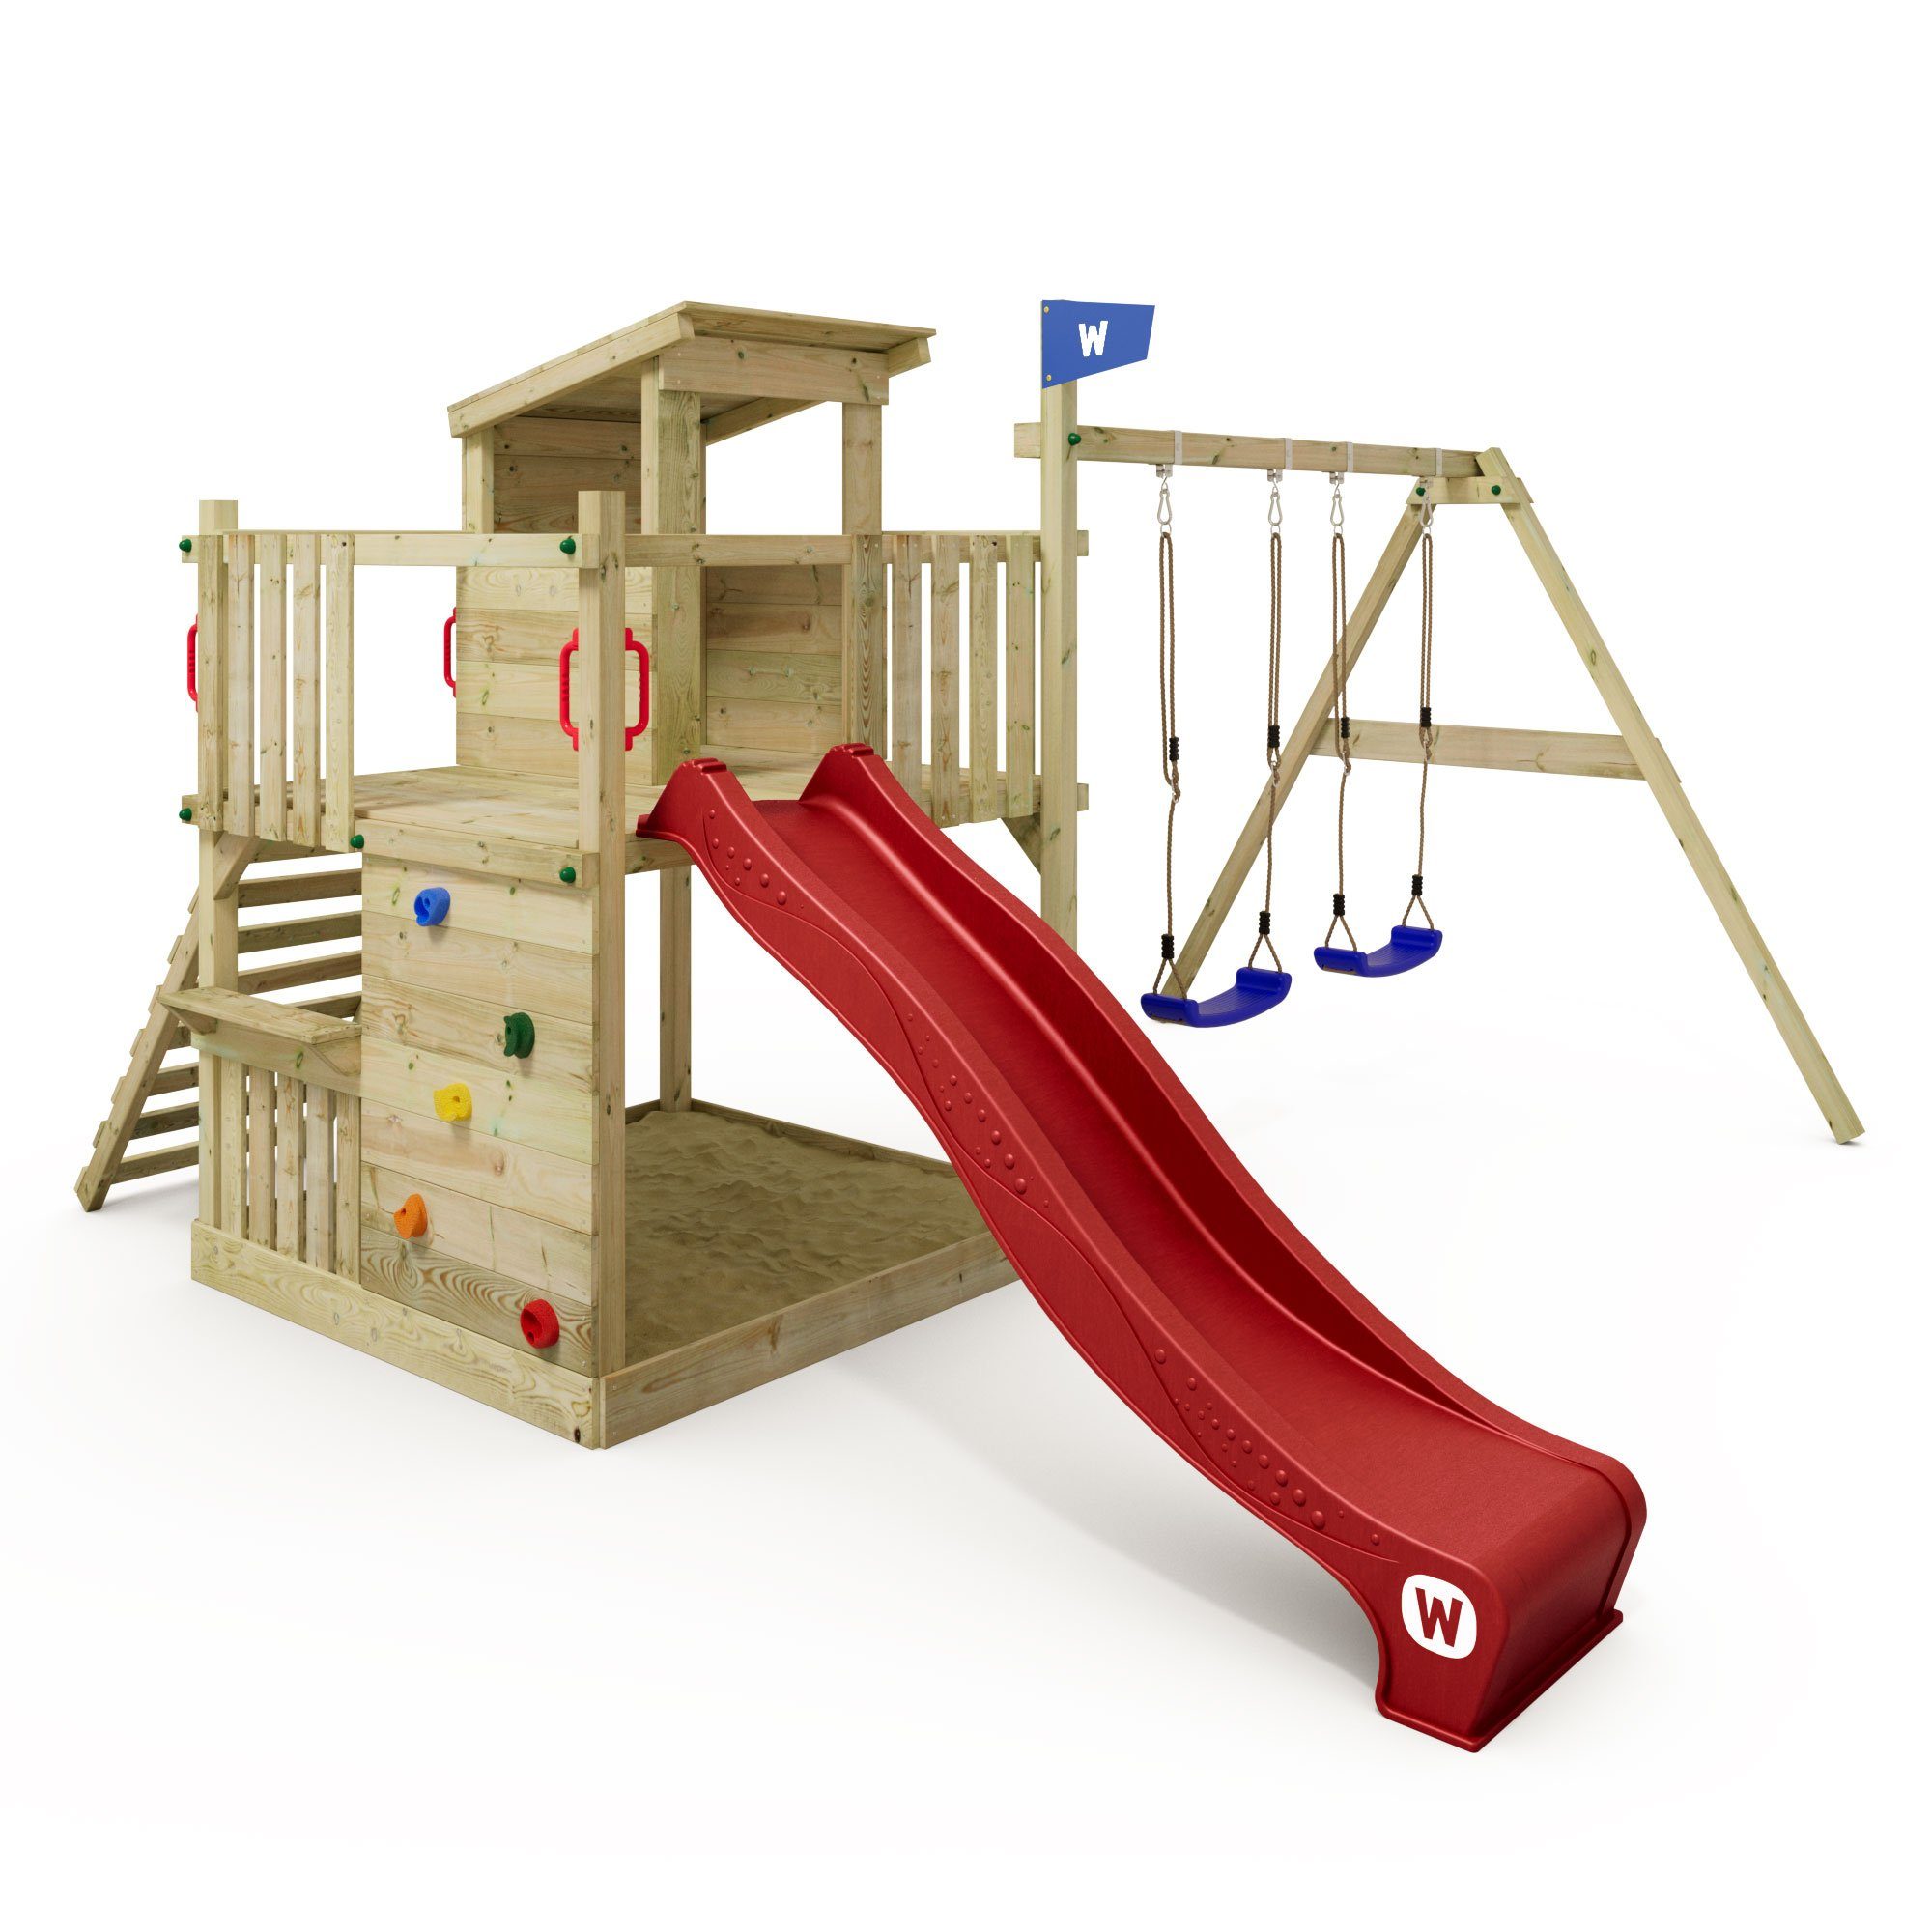 Wickey Klettergerüst Spielturm Smart Cabin mit Rutsche und großem Sandkasten, 10-jahre Garantie*, Spielhaus mit flachem Holzdach und Sitzbank rot